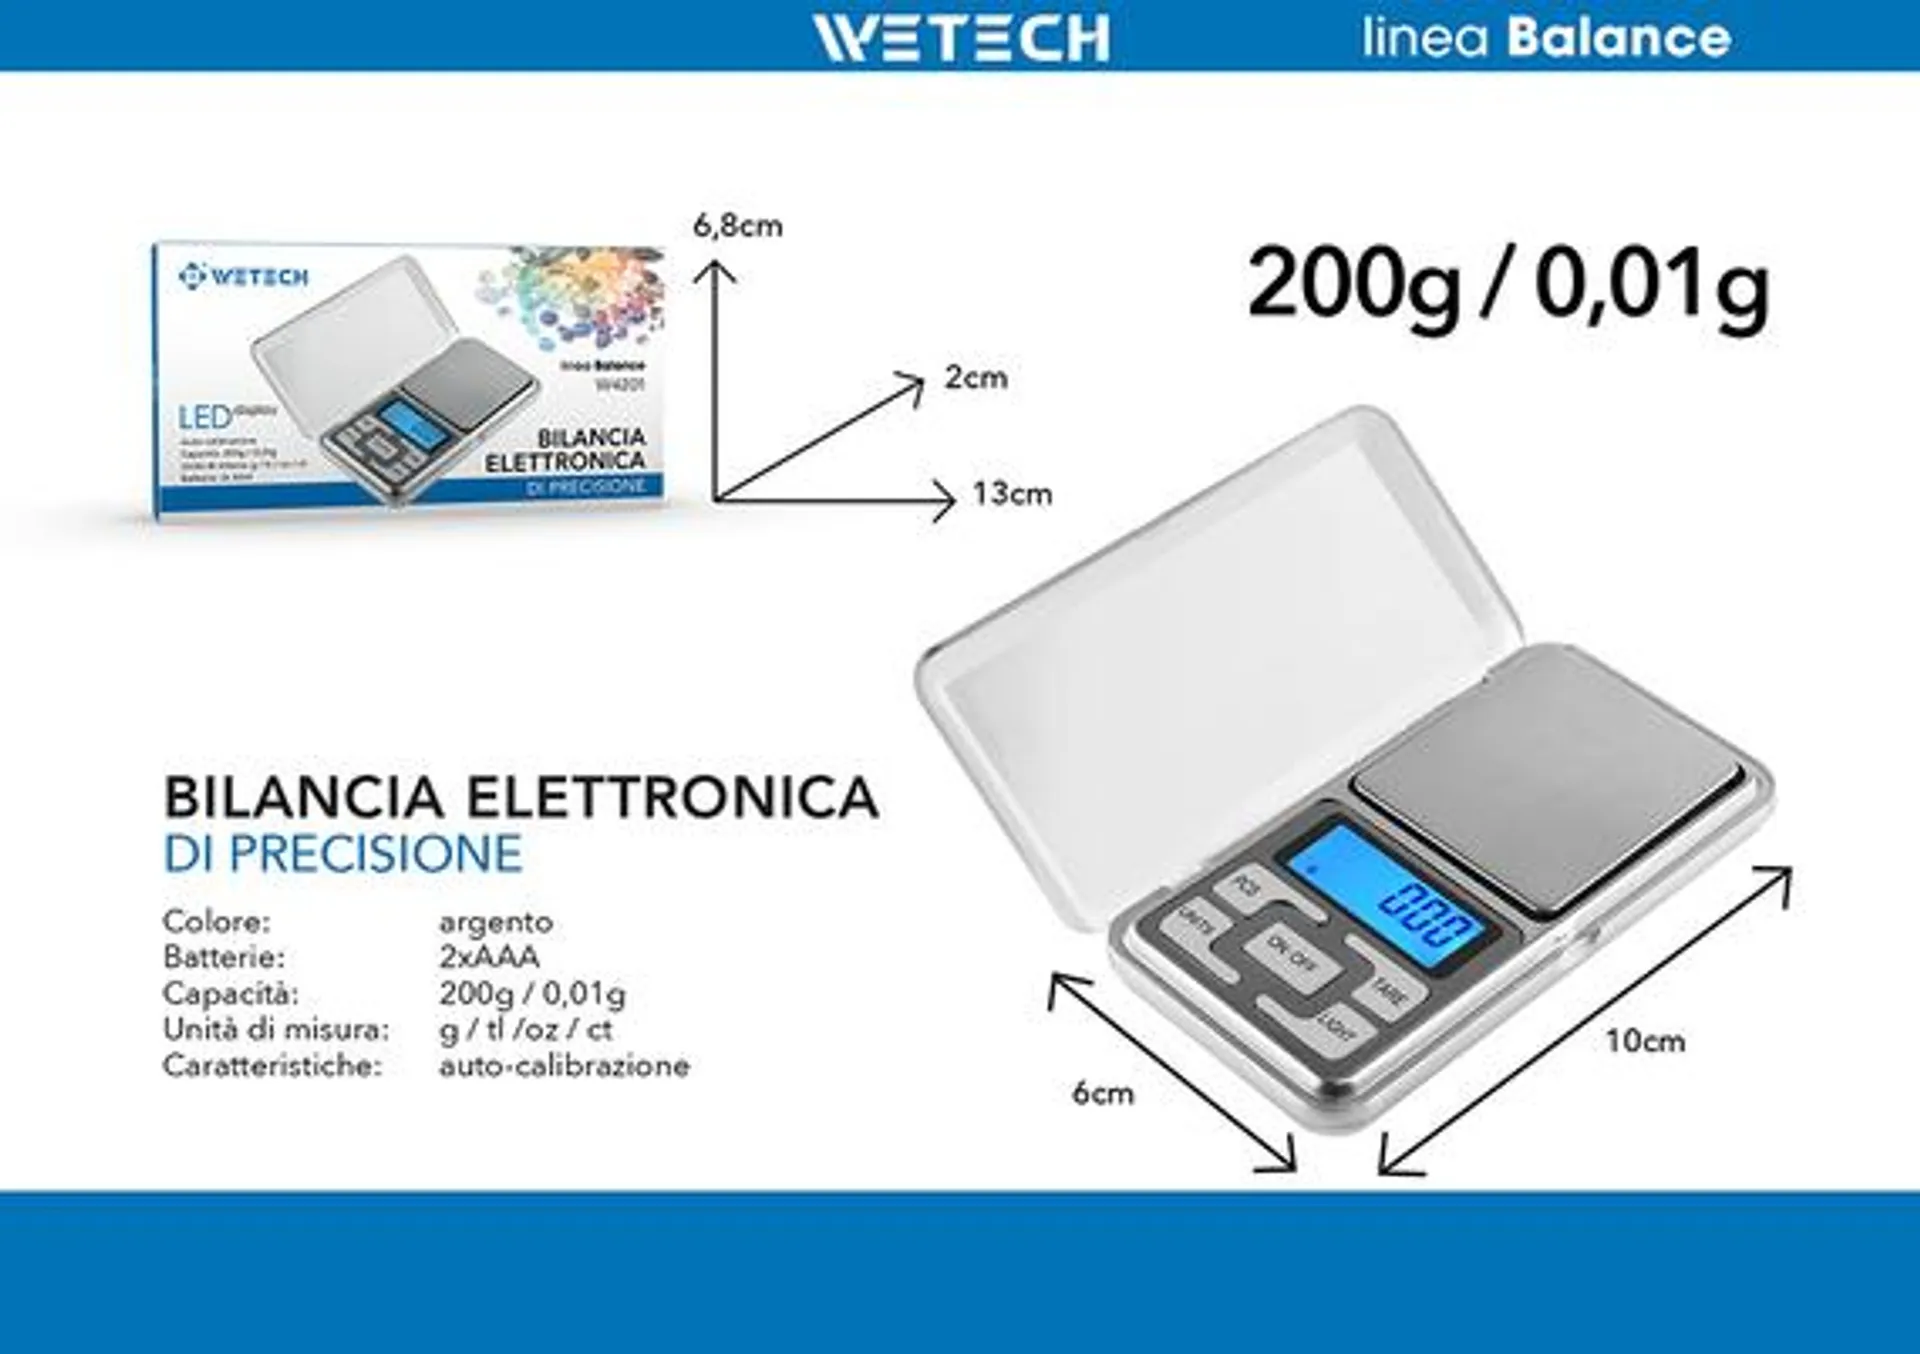 Wetech Bilancia Elettronica Di Precisione